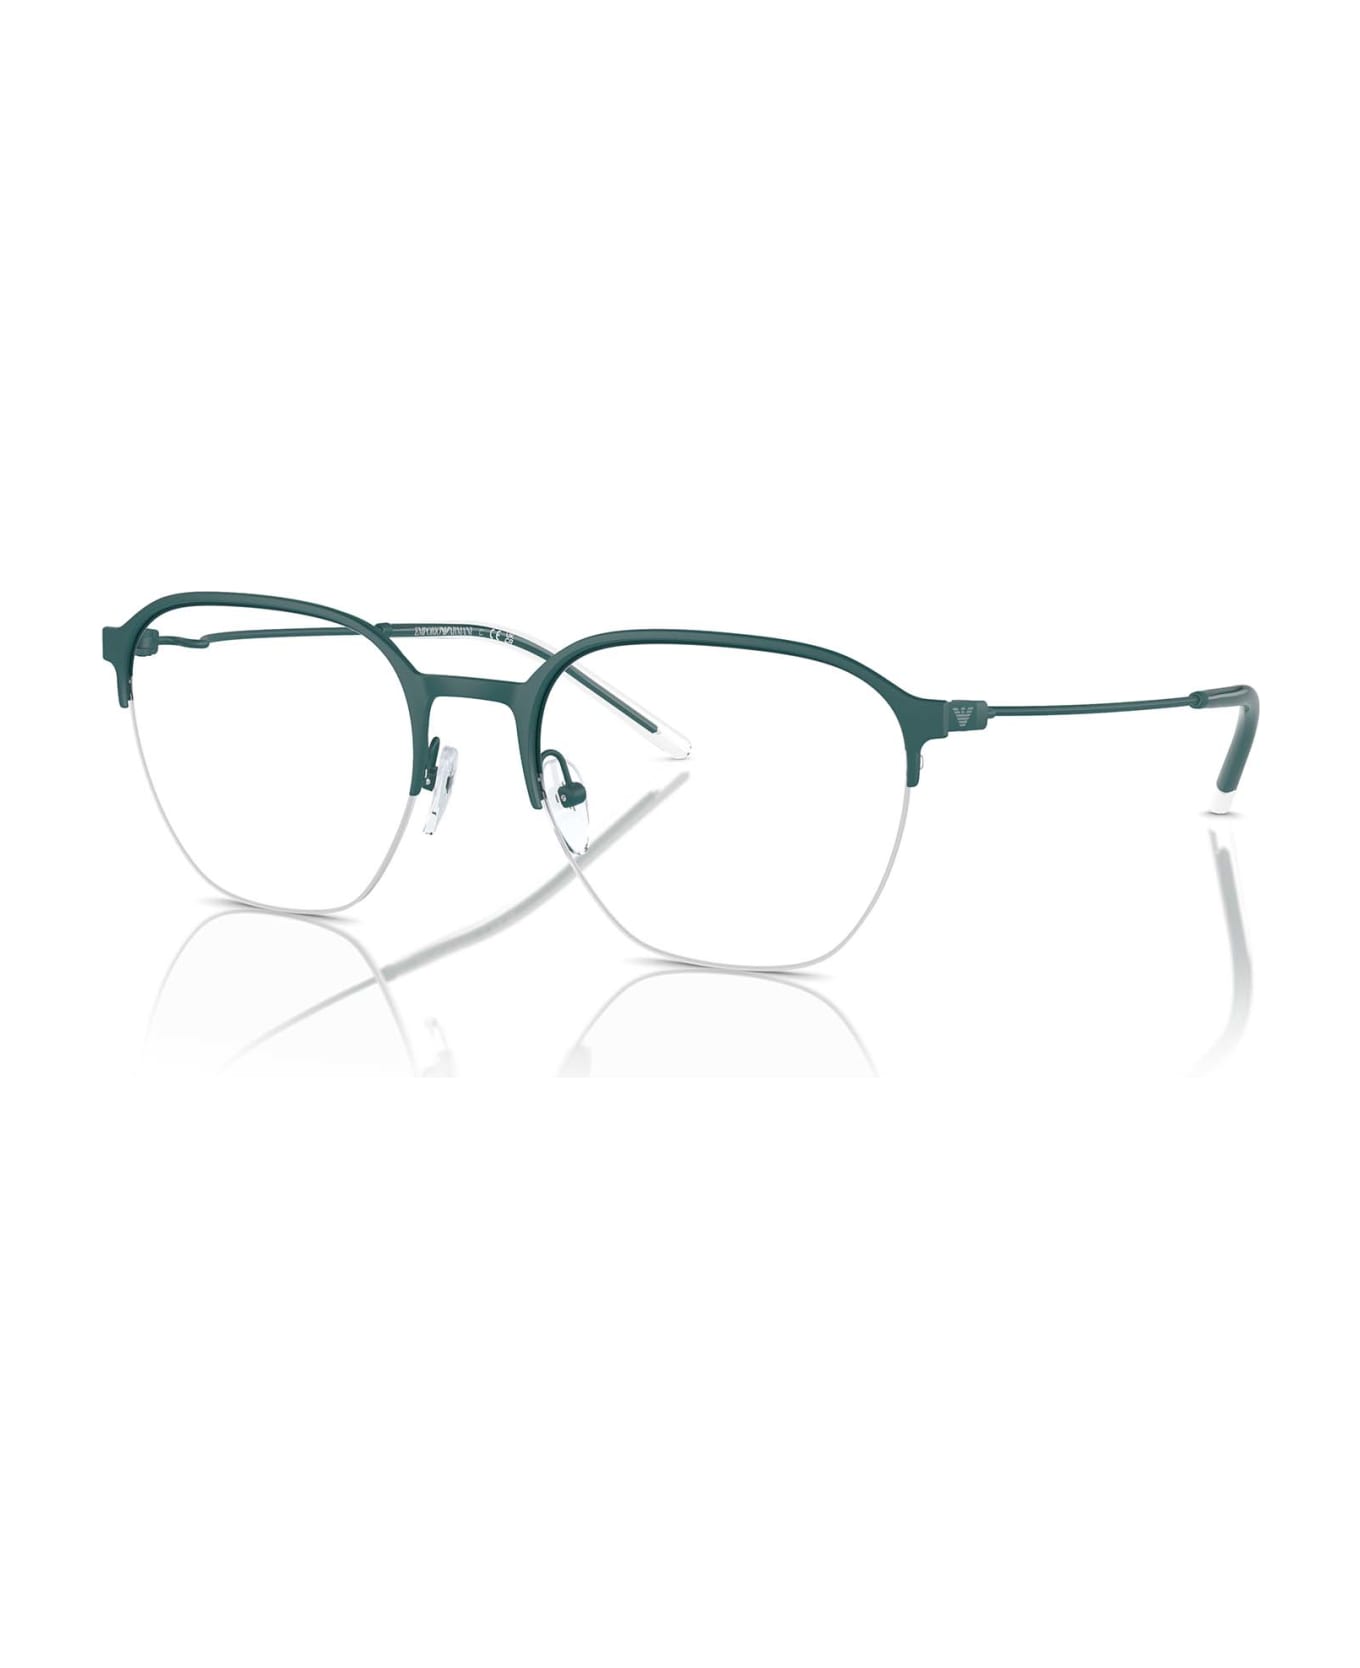 Emporio Armani Ea1160 Matte Alpine Green Glasses - Matte Alpine Green アイウェア